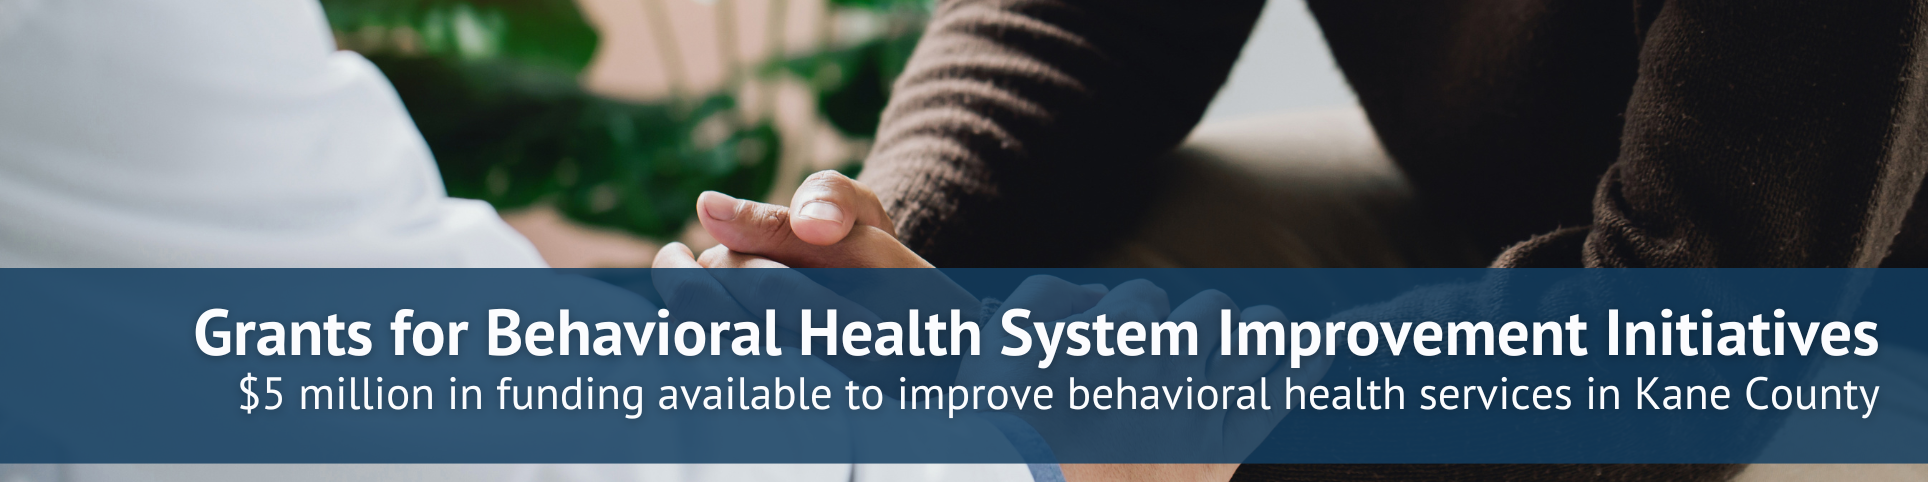 Behavioral Health System Grants Banner (2).png